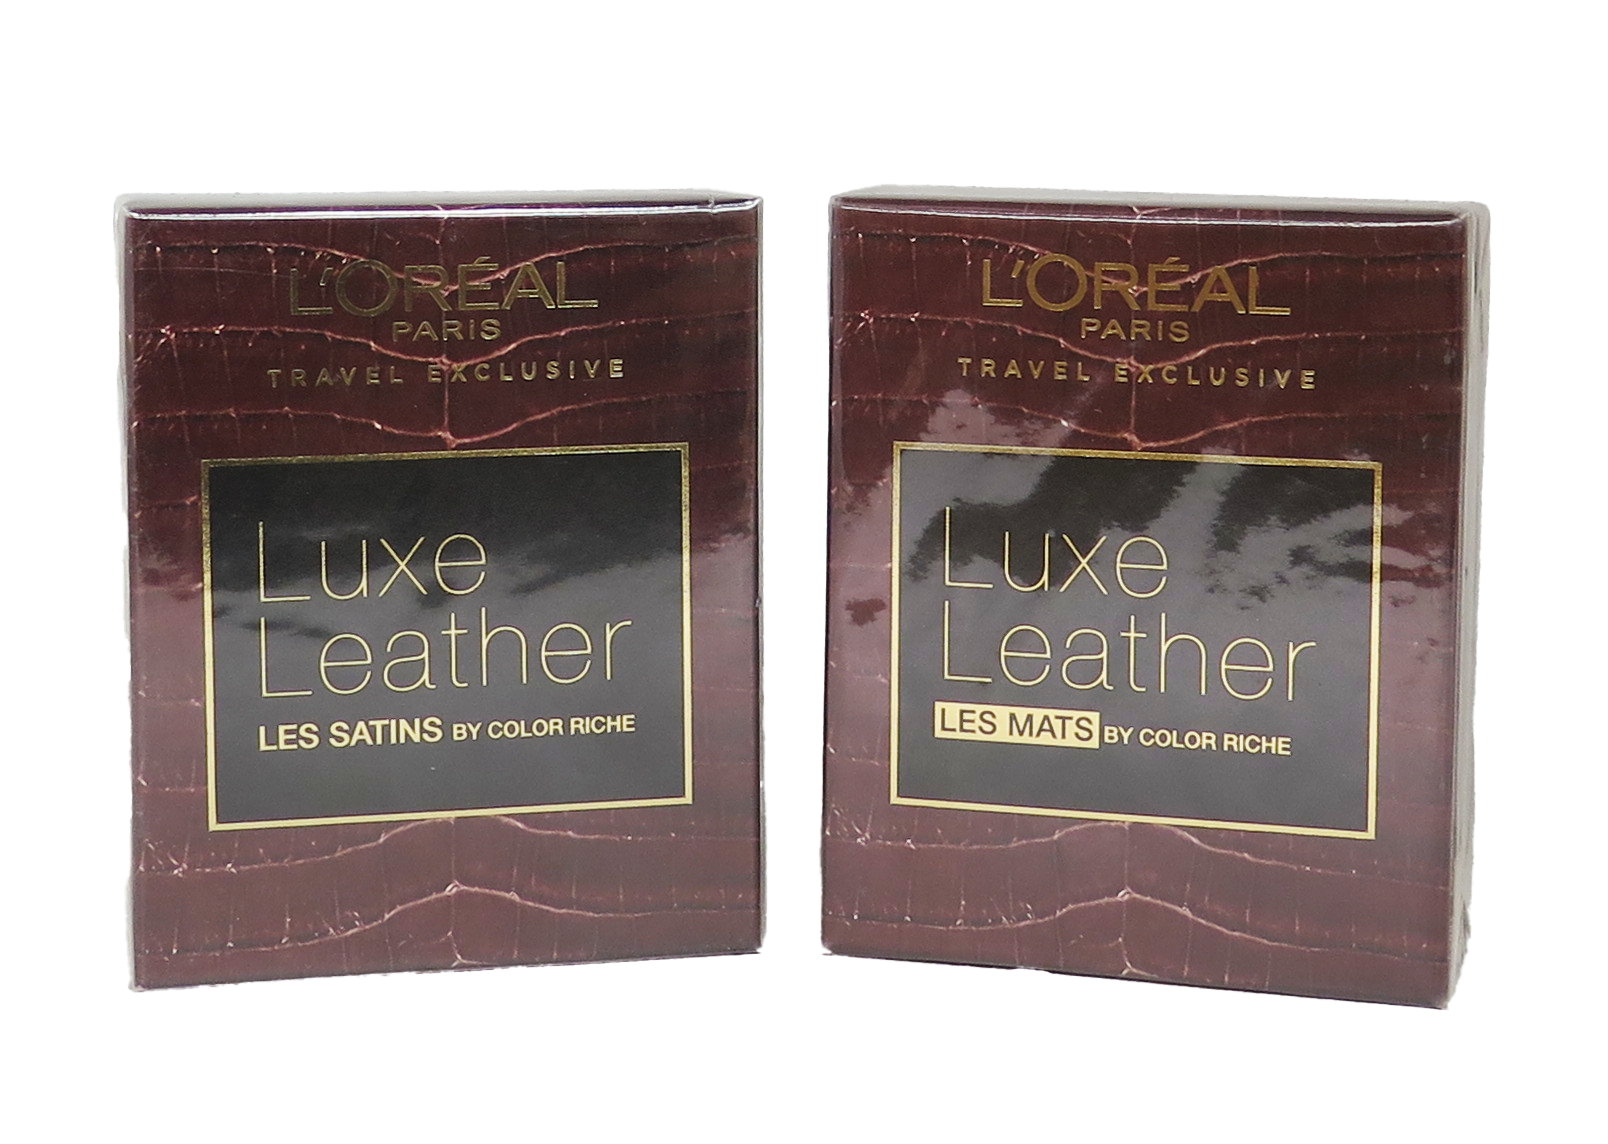 L'Oreal Paris Travel Exclusive Luxe Leather Color Riche 3 pcs, 4.8g / 0.17 FL. OZ - Assorted